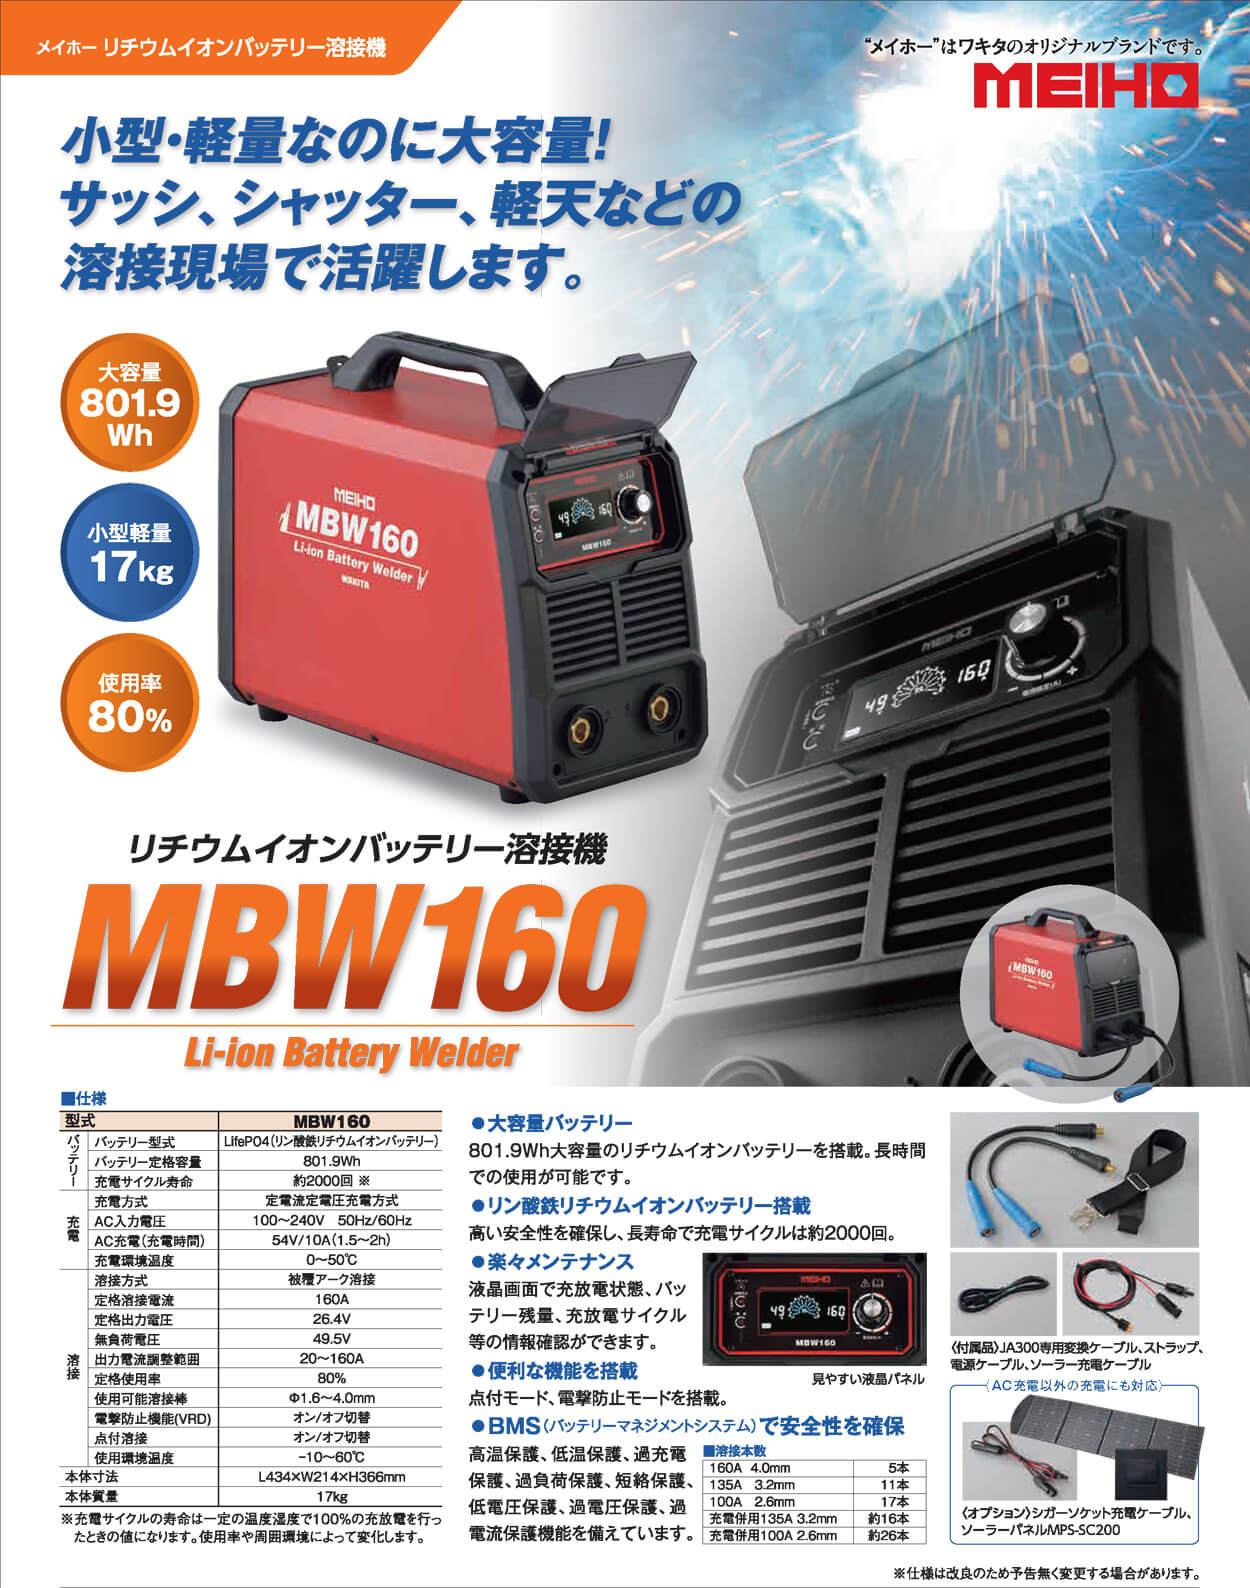 MBW160